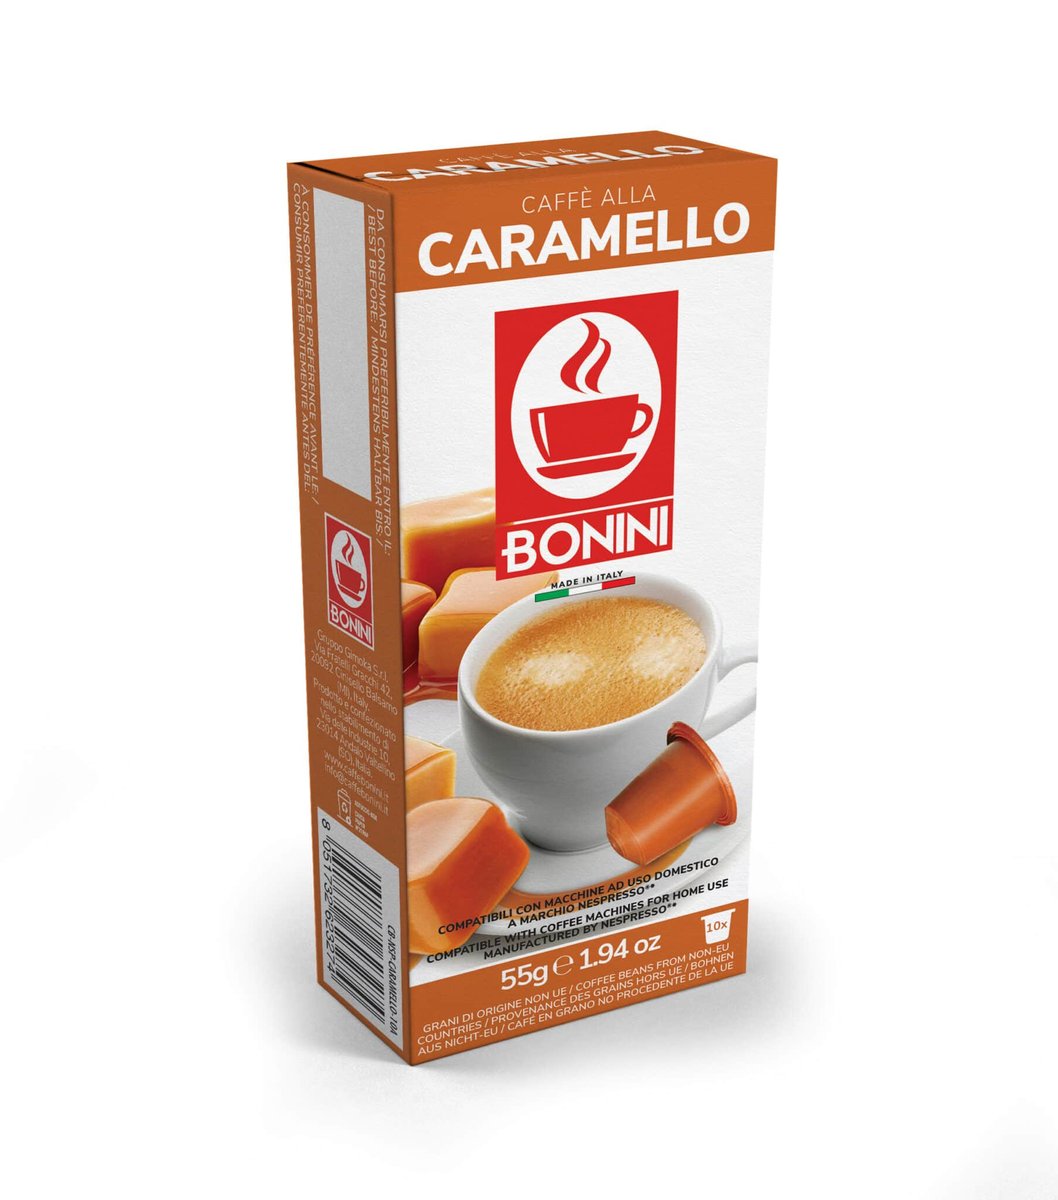 Gimoka Gruppo S.r.l. Bonini Caramello (kawa aromatyzowana karmelowa) - kapsułki do Nespresso - 10 kapsułek